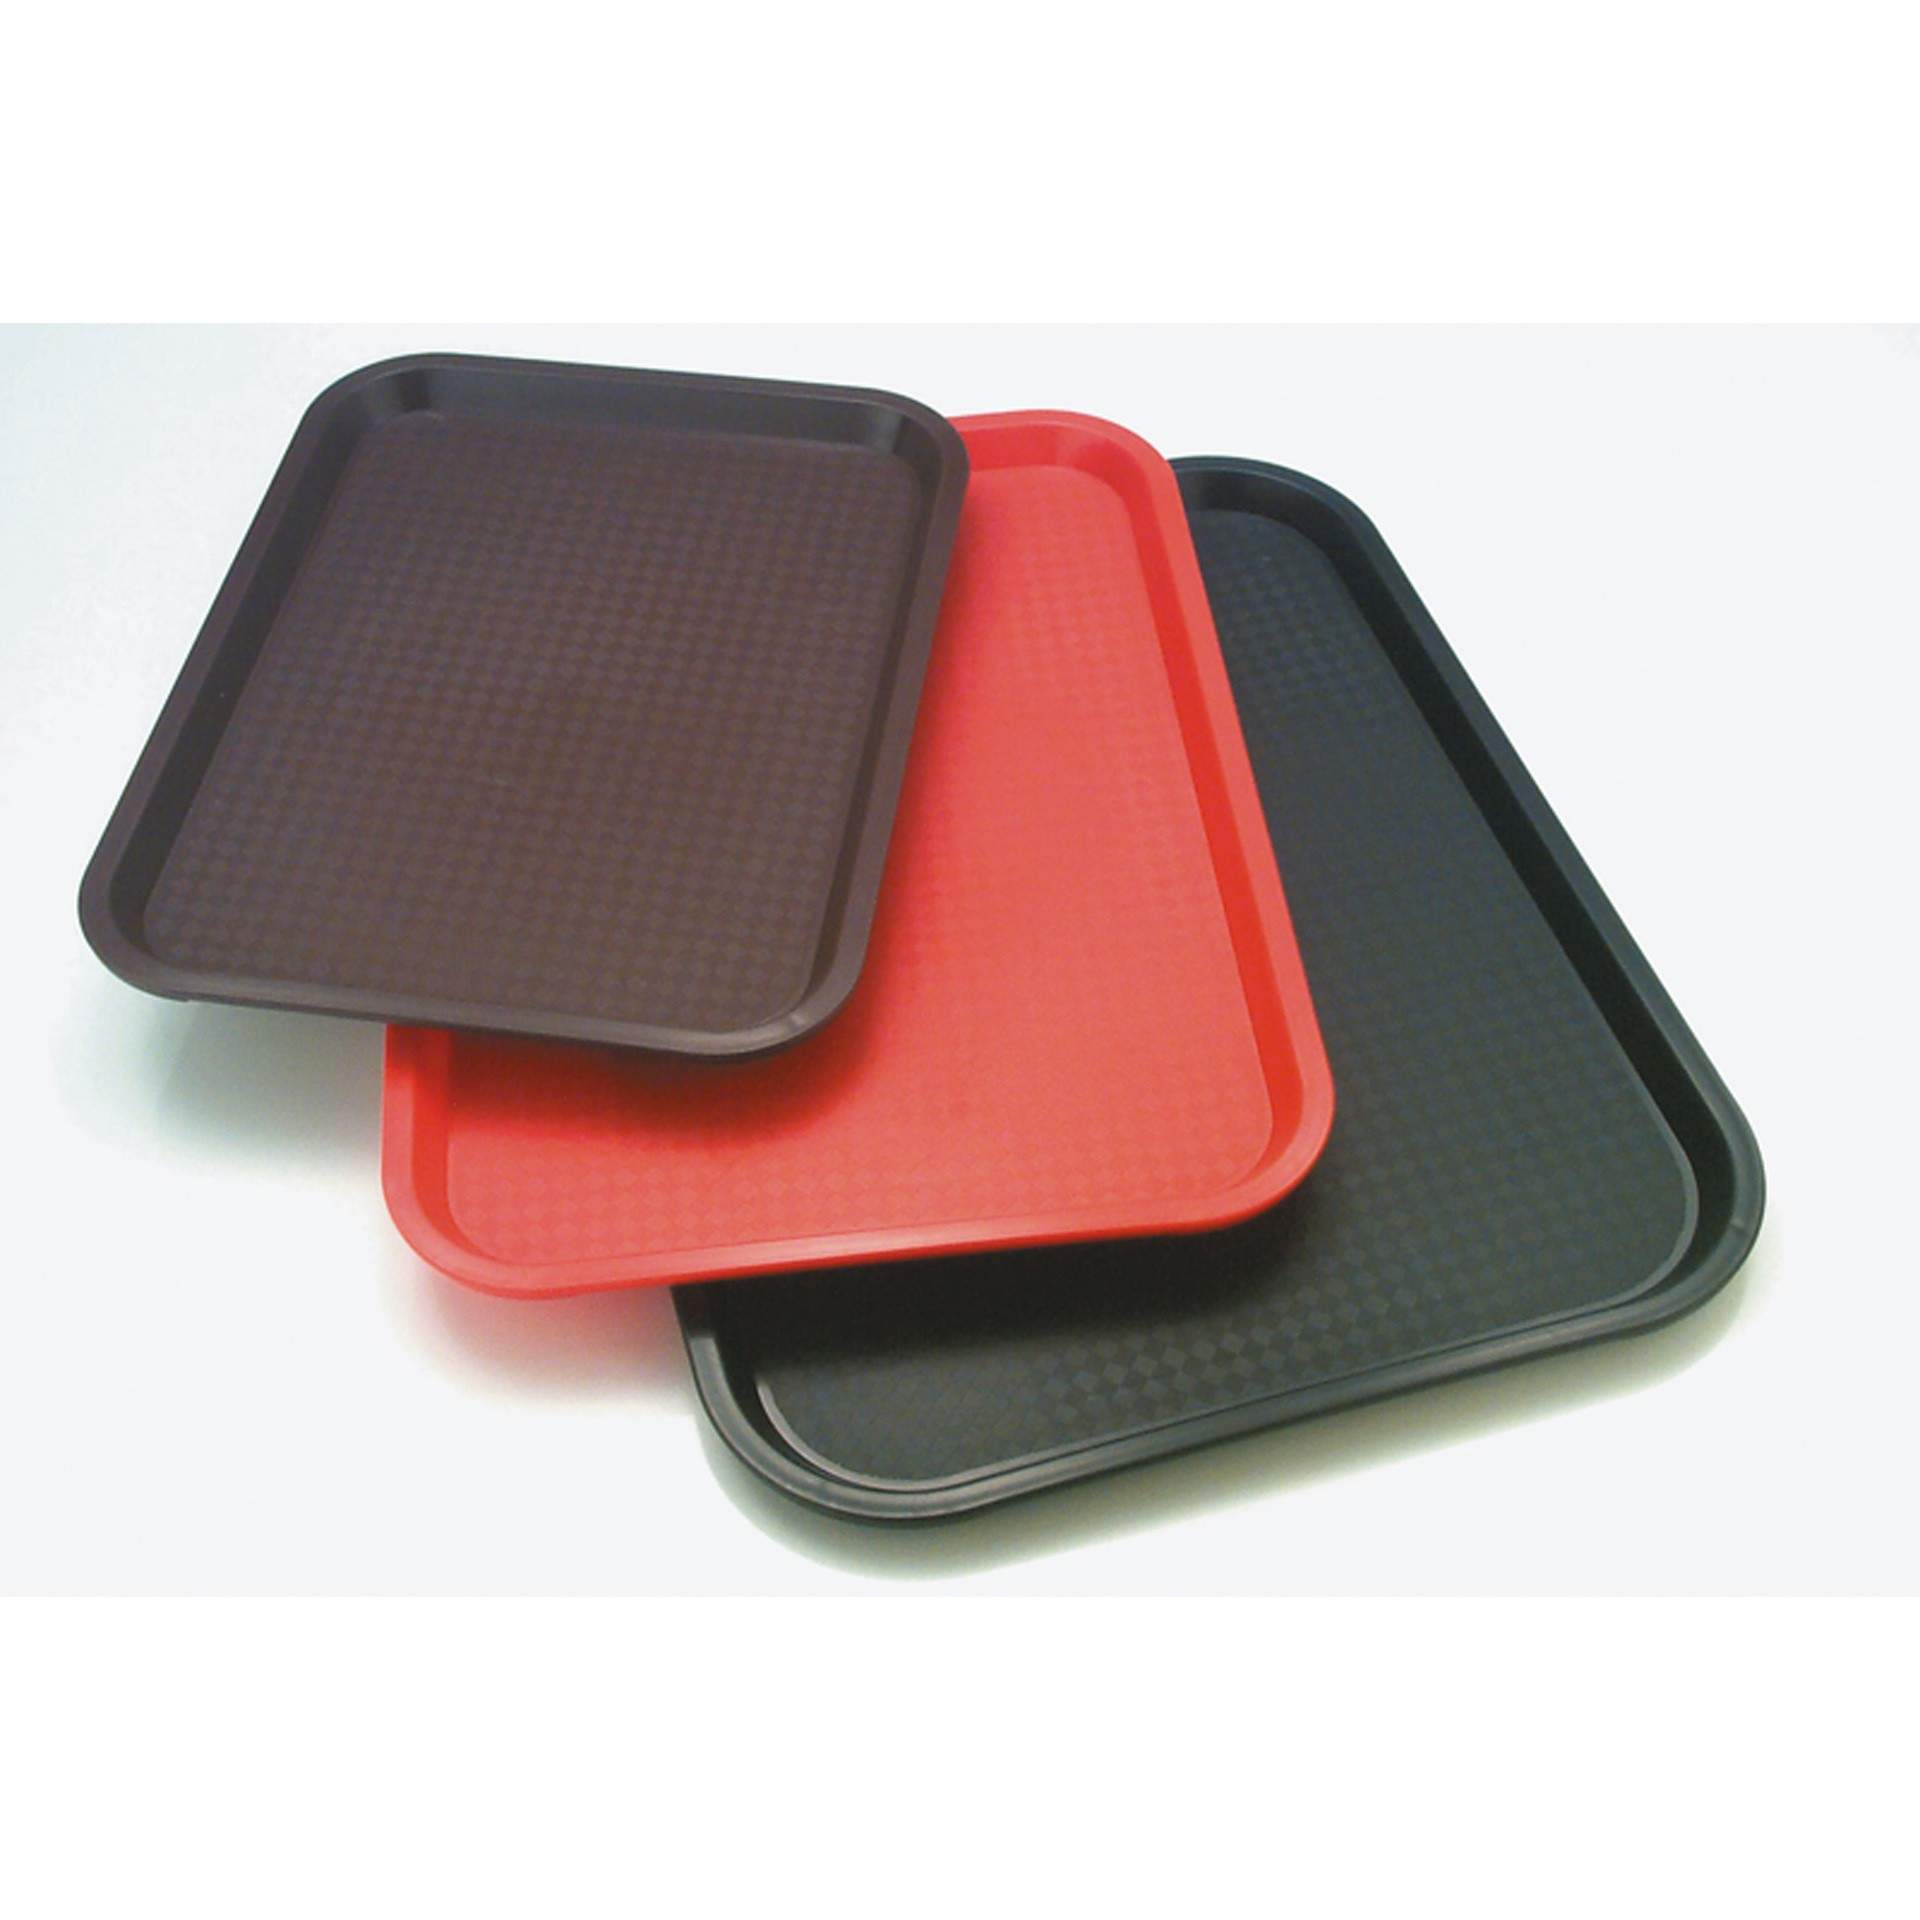 Tablett - rot - rechteckig - Abm. 45 x 35,5 cm - Polypropylen - 540-B